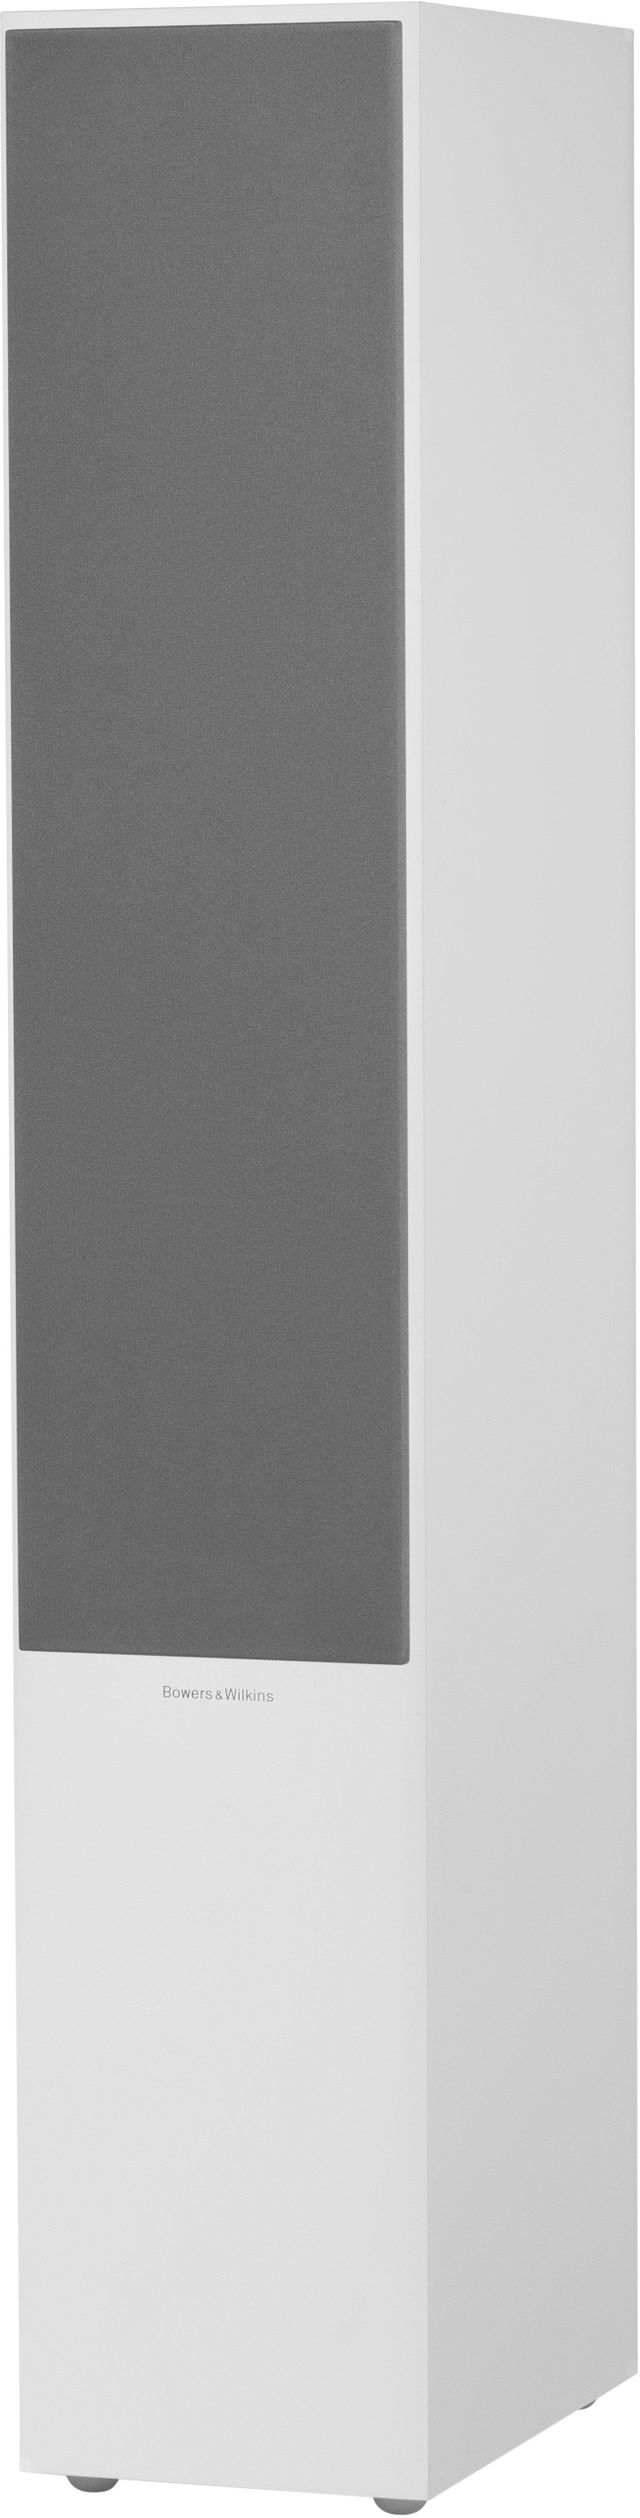 Bowers & Wilkins Satin White 704 S2 Floorstanding Speaker Each 1